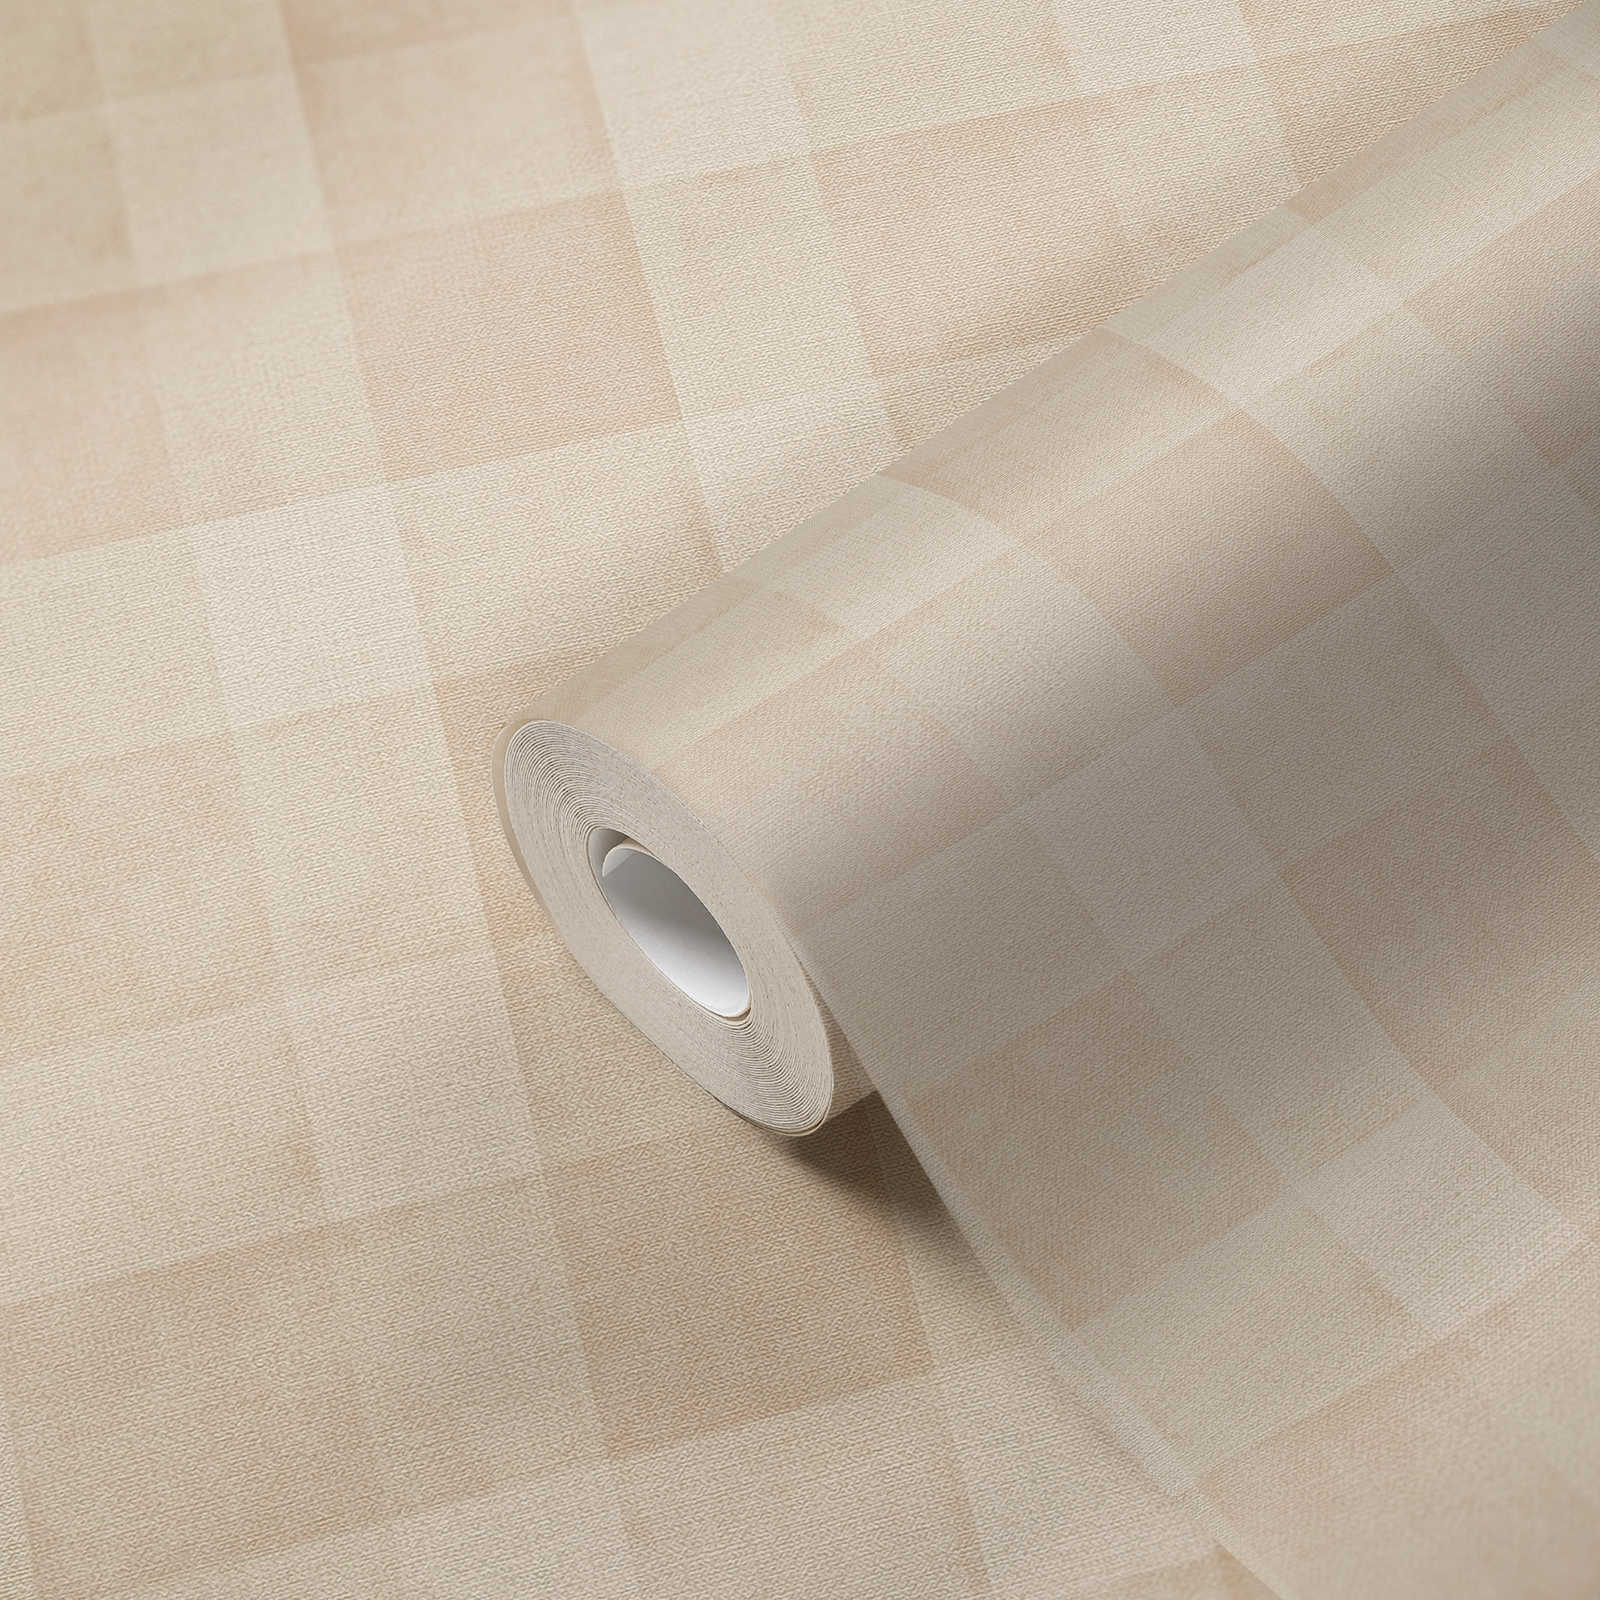             Carta da parati in tessuto non tessuto senza PVC con motivo a quadri e aspetto lino - beige
        